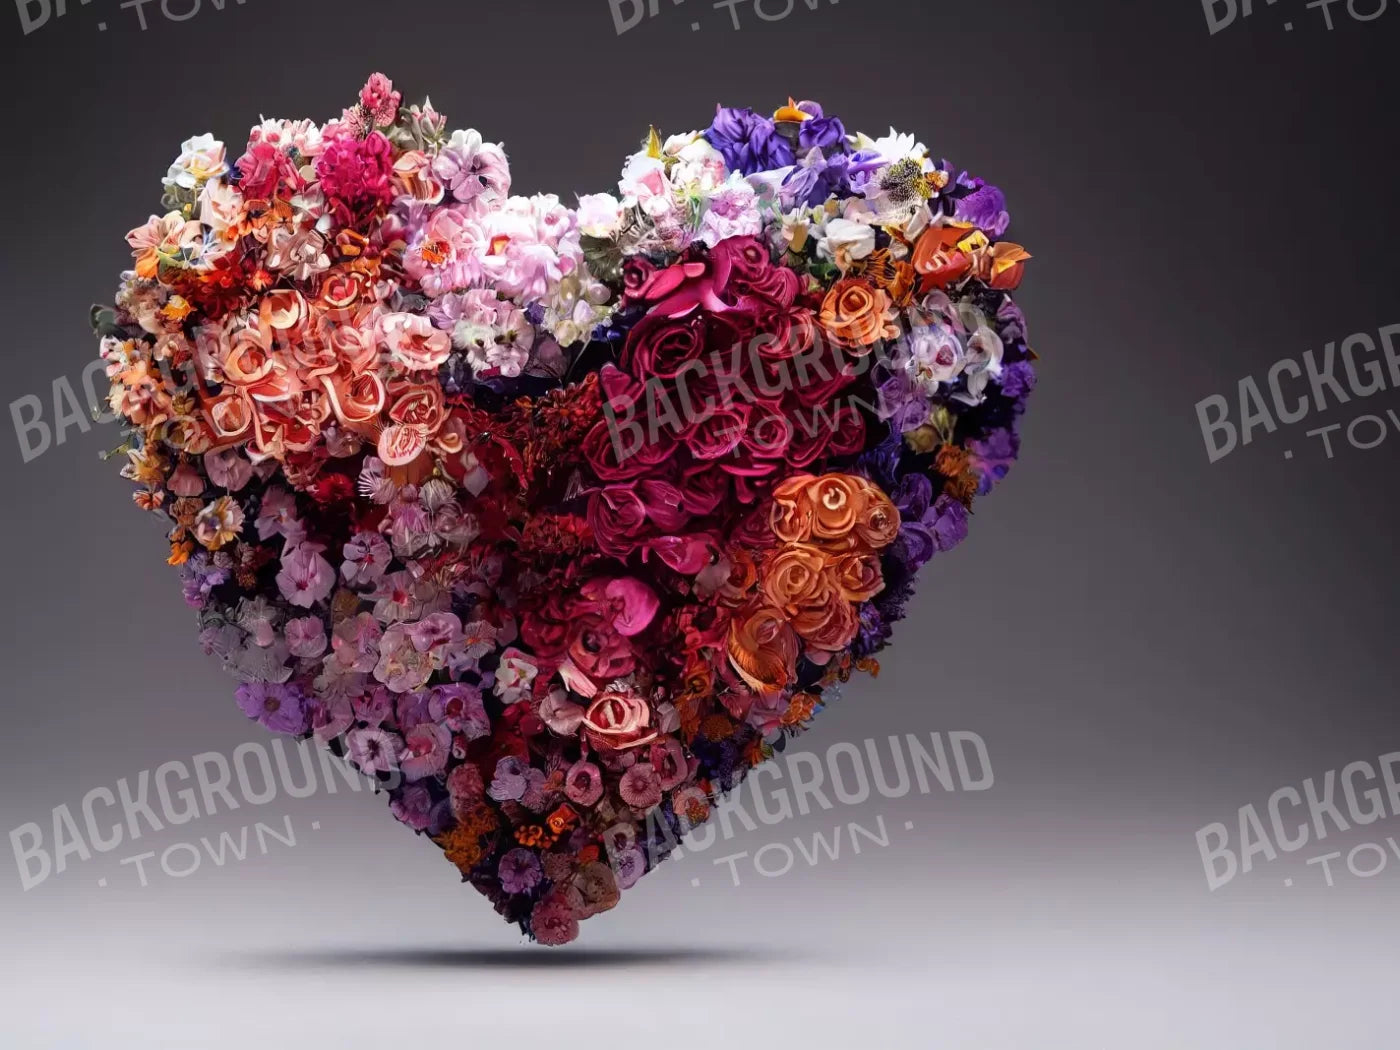 Heart Of Flowers 6’8X5’ Fleece (80 X 60 Inch) Backdrop